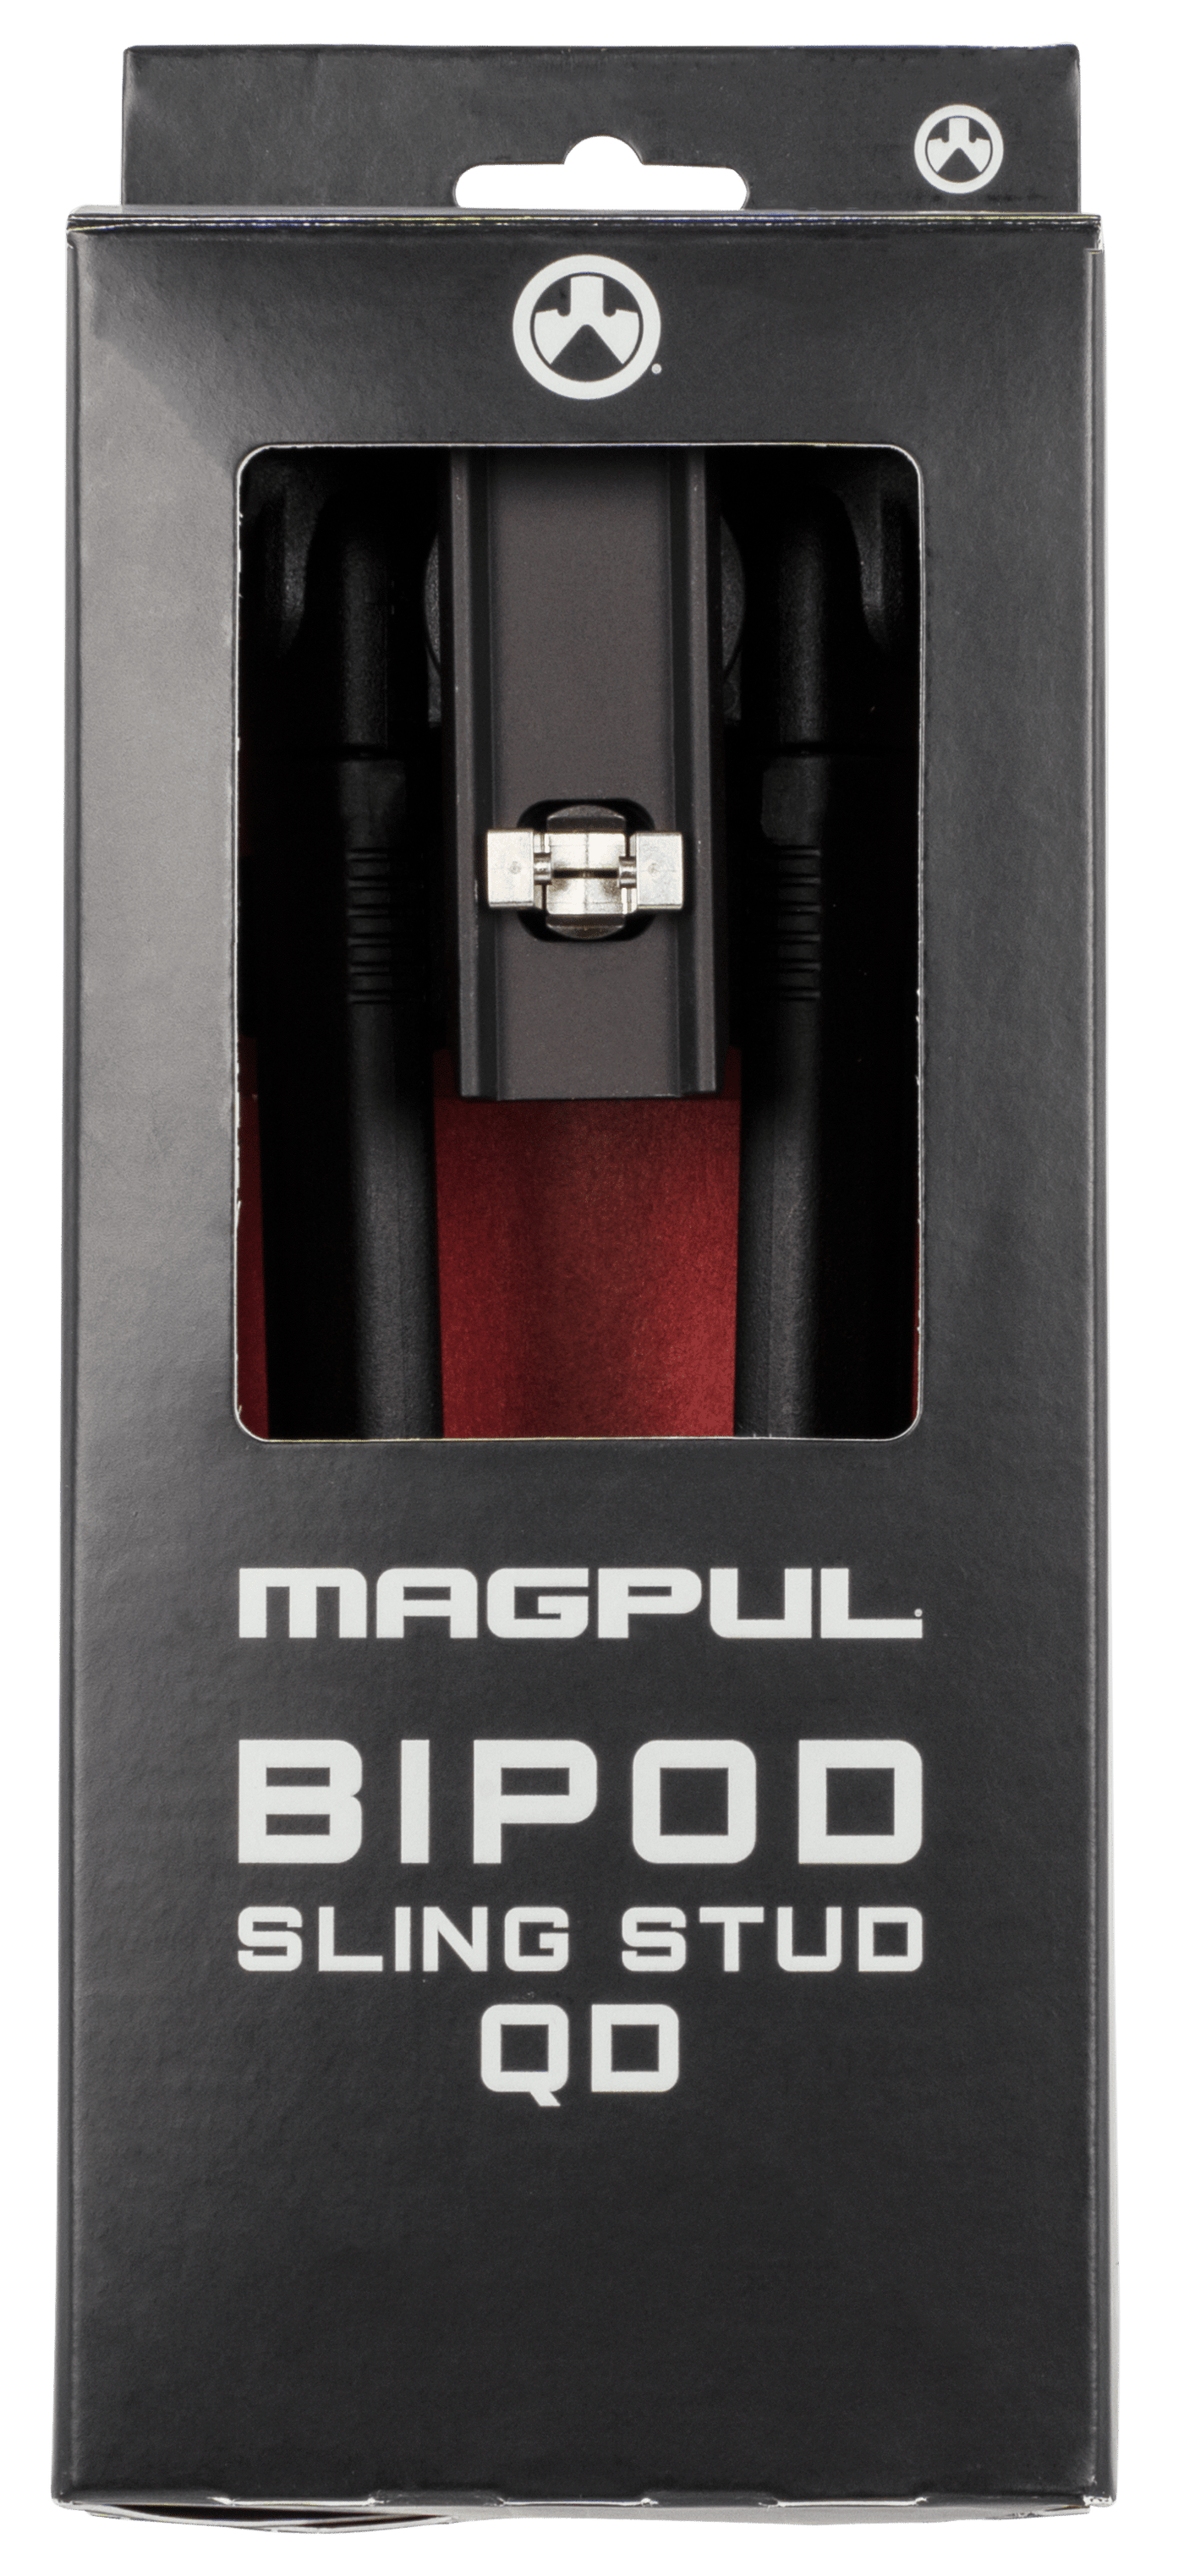 MAGPUL INDUSTRIES CORP Magpul Bipod Sling Stud Qd Black Firearm Accessories